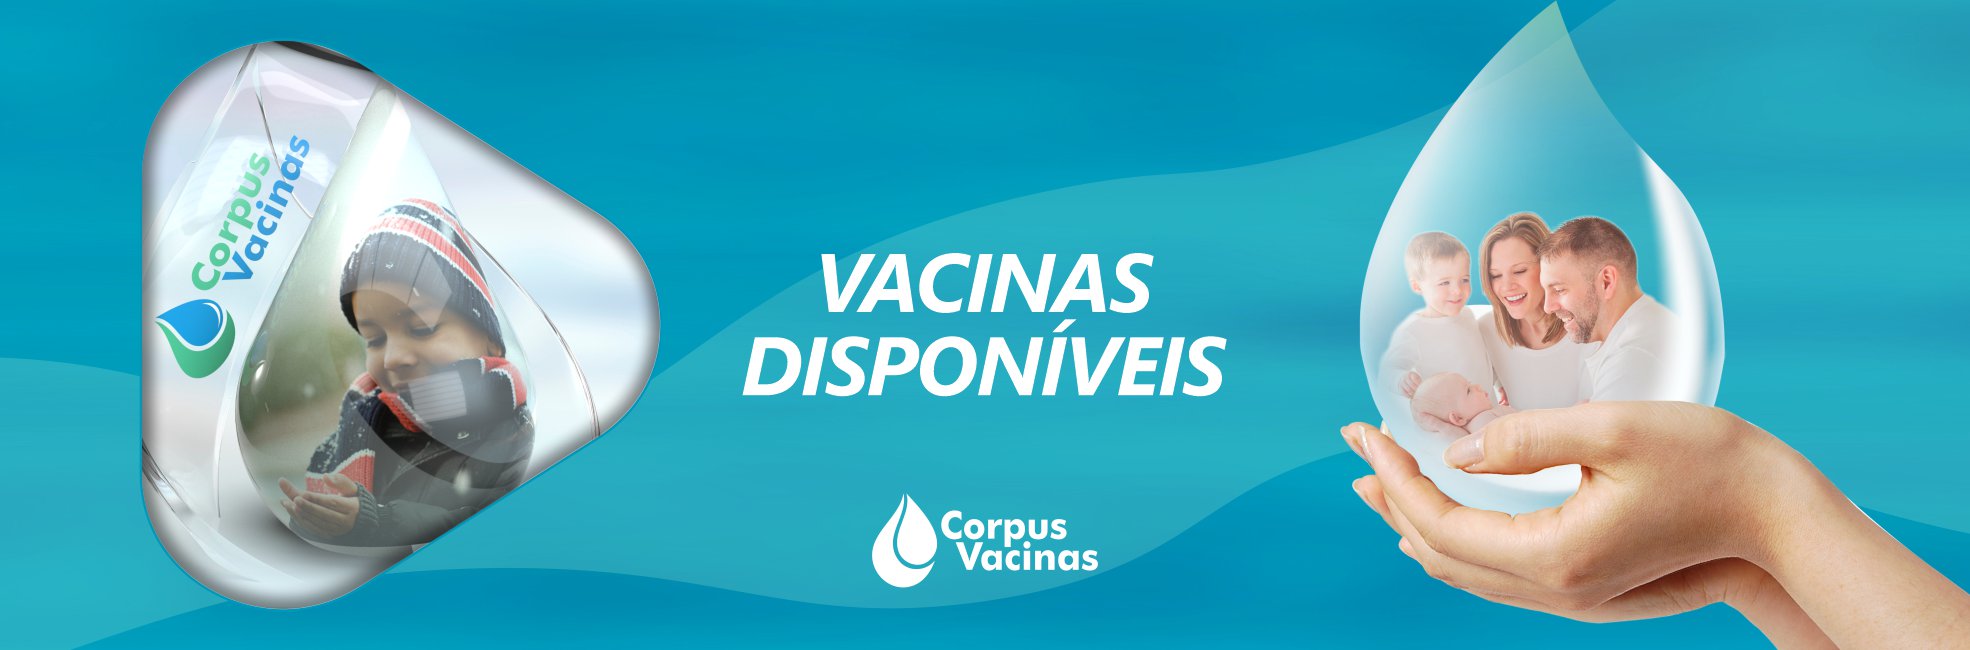 Corpus Vacinas